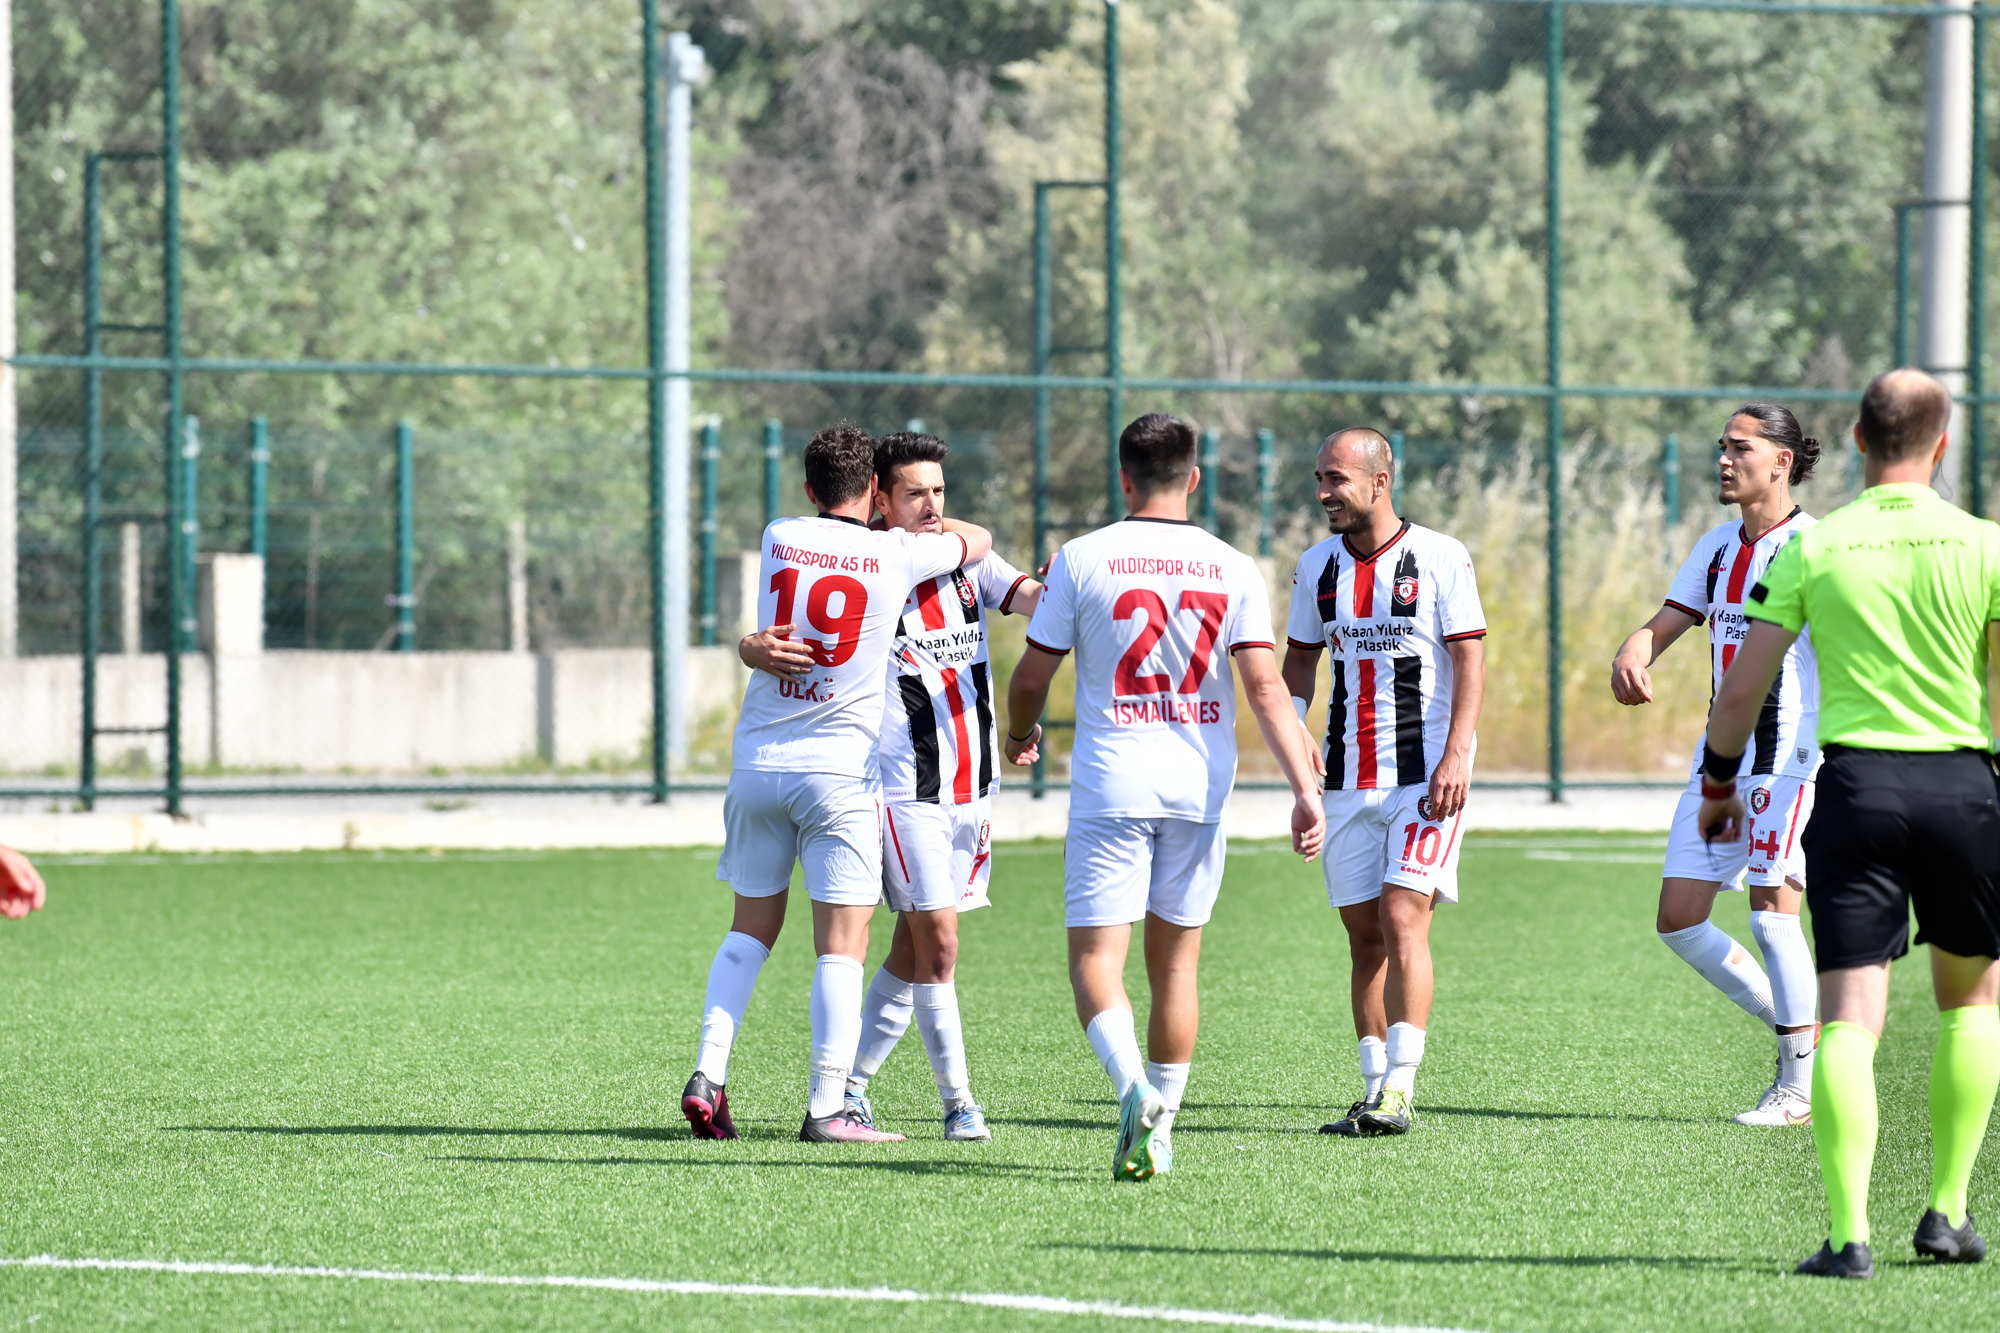 Yıldızspor 45 Fk'dan Kritik Maçta Farklı Galibiyet (3)